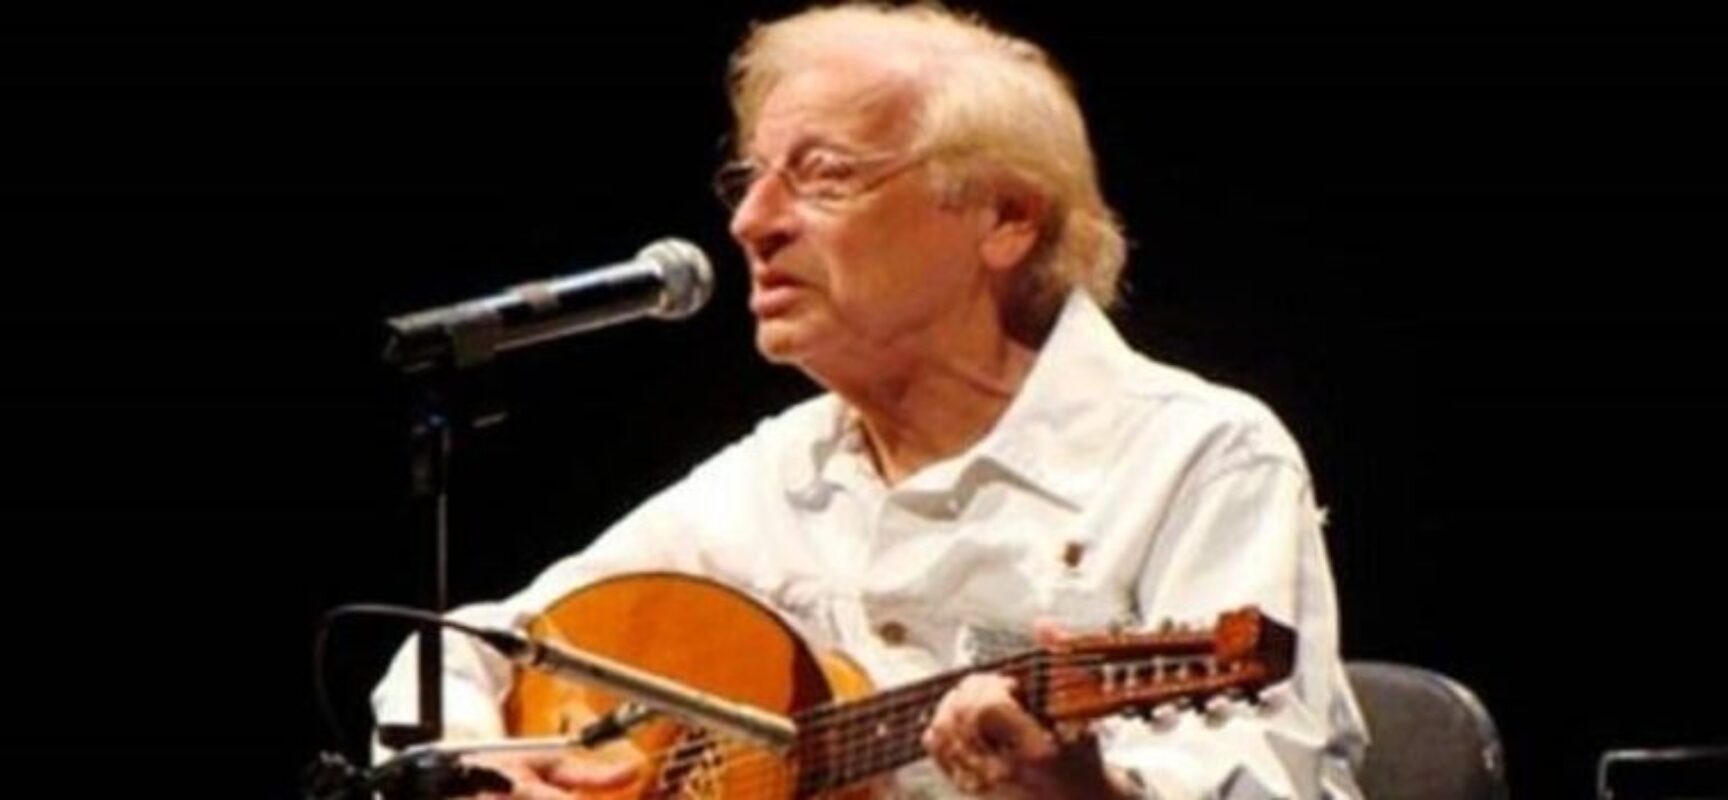 Humorista e músico Juca Chaves morre aos 84 anos em Salvador